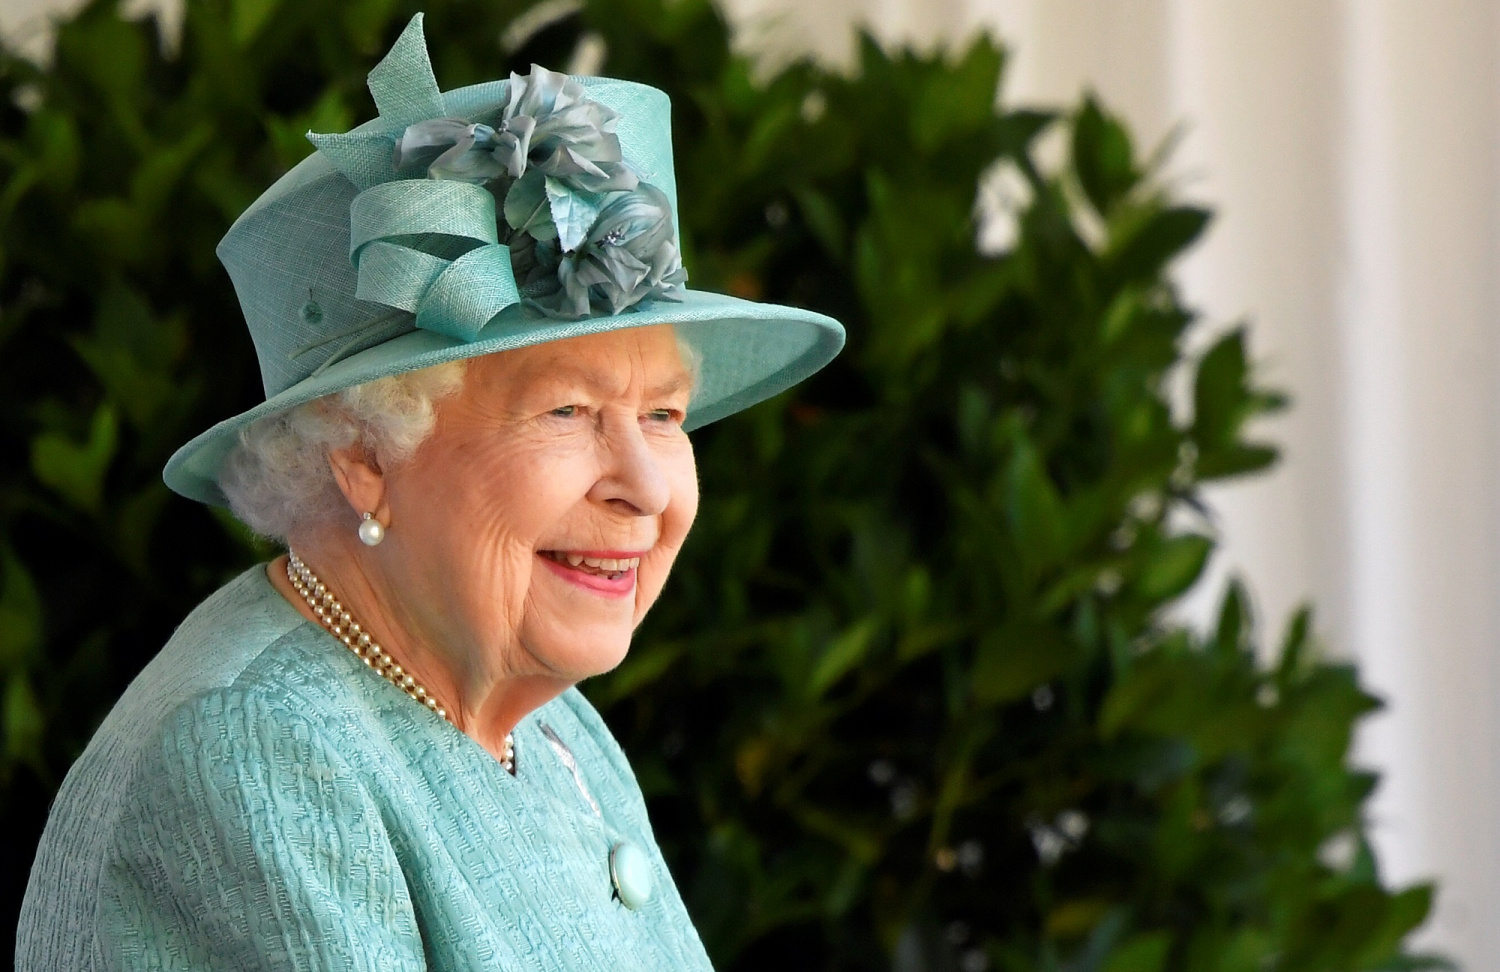 Queen Elizabeth Has A Fun Side Despite Her Rigid Royal Life, Author Says